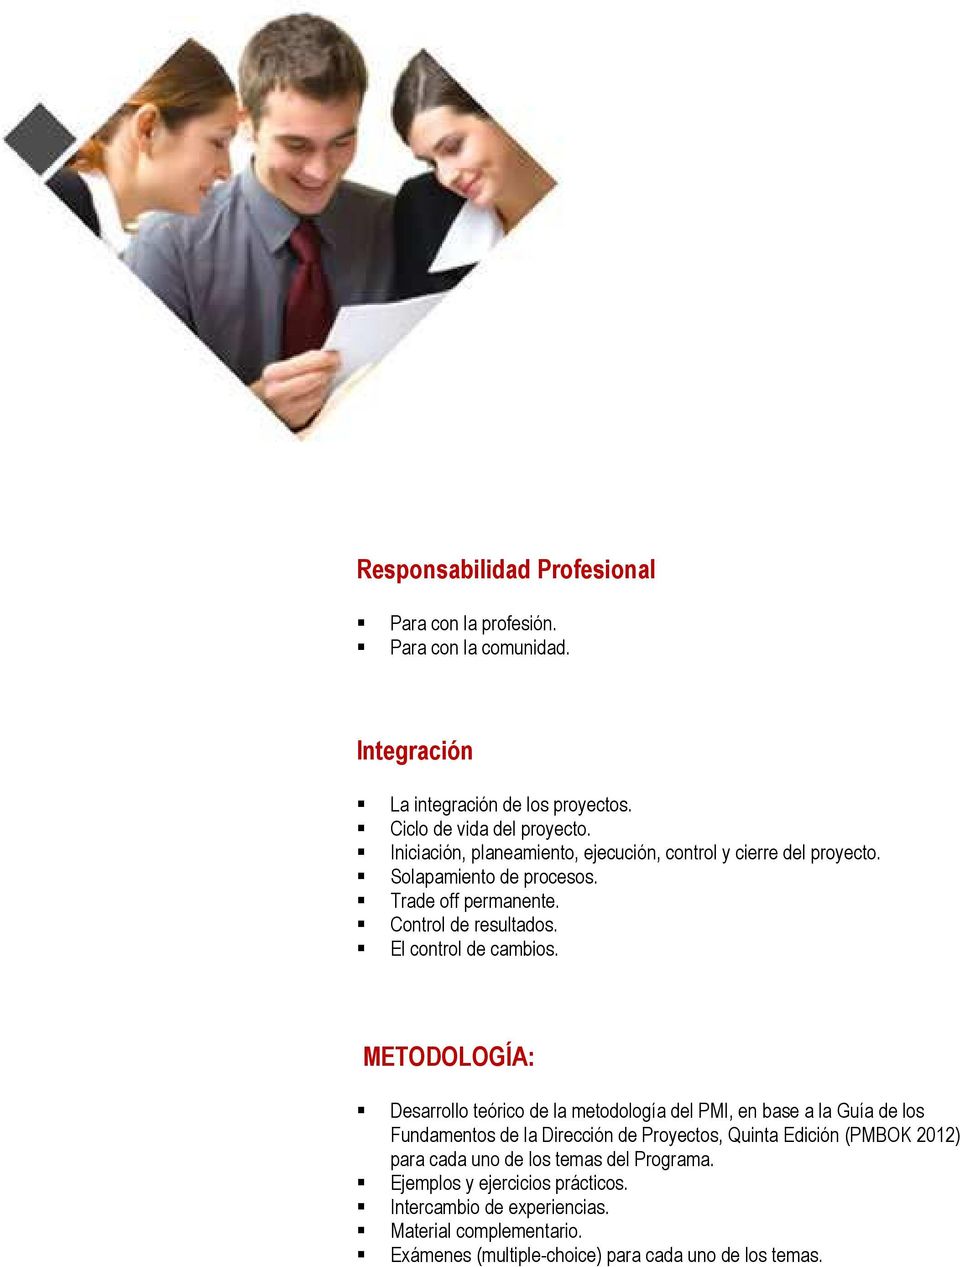 METODOLOGÍA: Desarrollo teórico de la metodología del PMI, en base a la Guía de los Fundamentos de la Dirección de Proyectos, Quinta Edición (PMBOK 2012) para